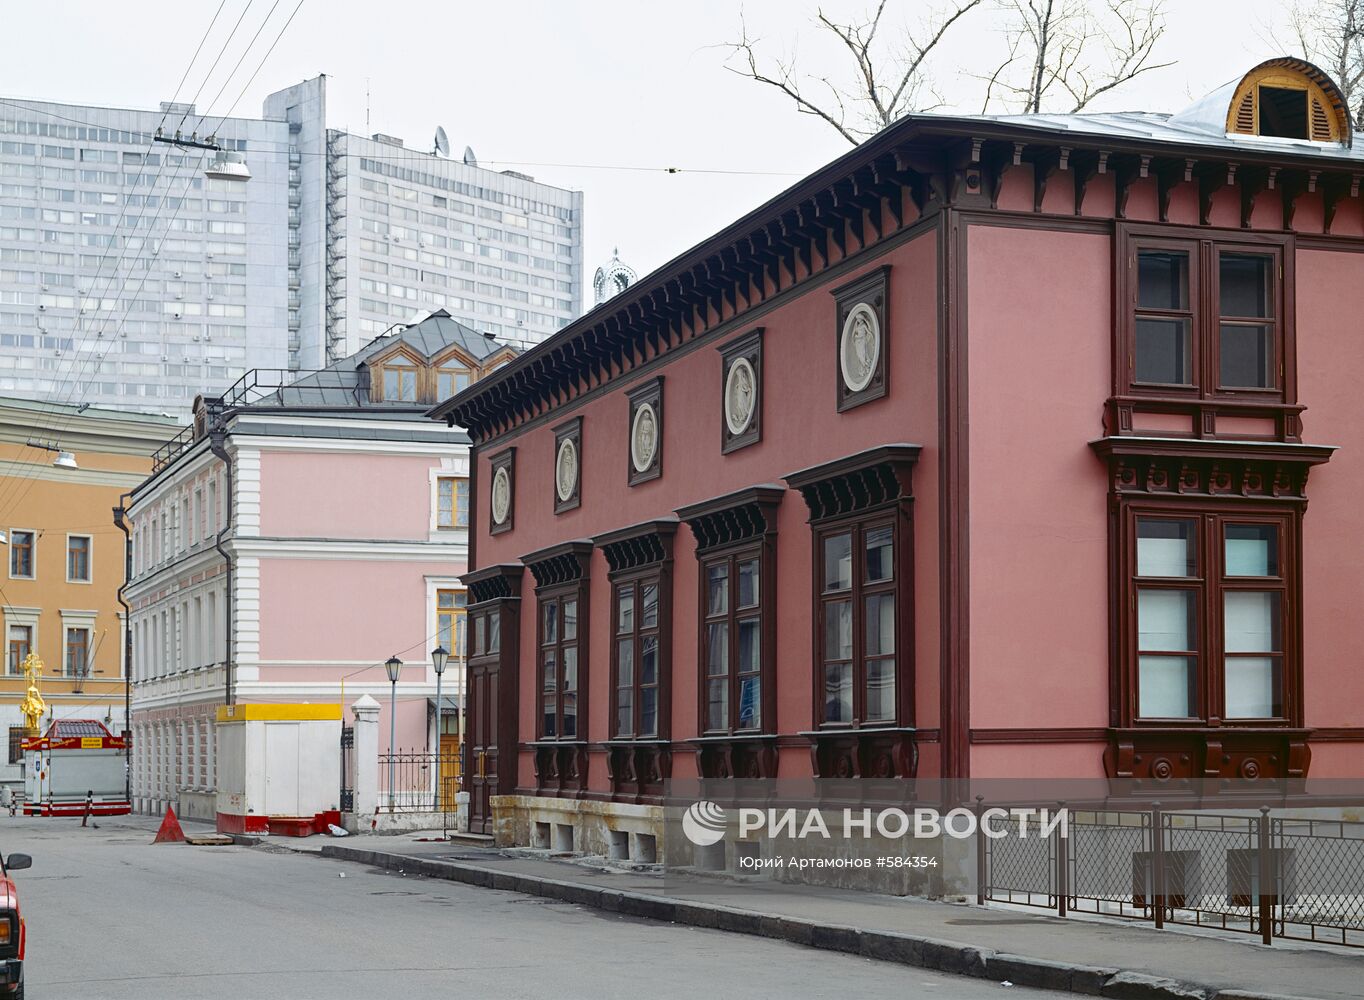 Жилой дом архитектора Михаила Осиповича Лопыревского